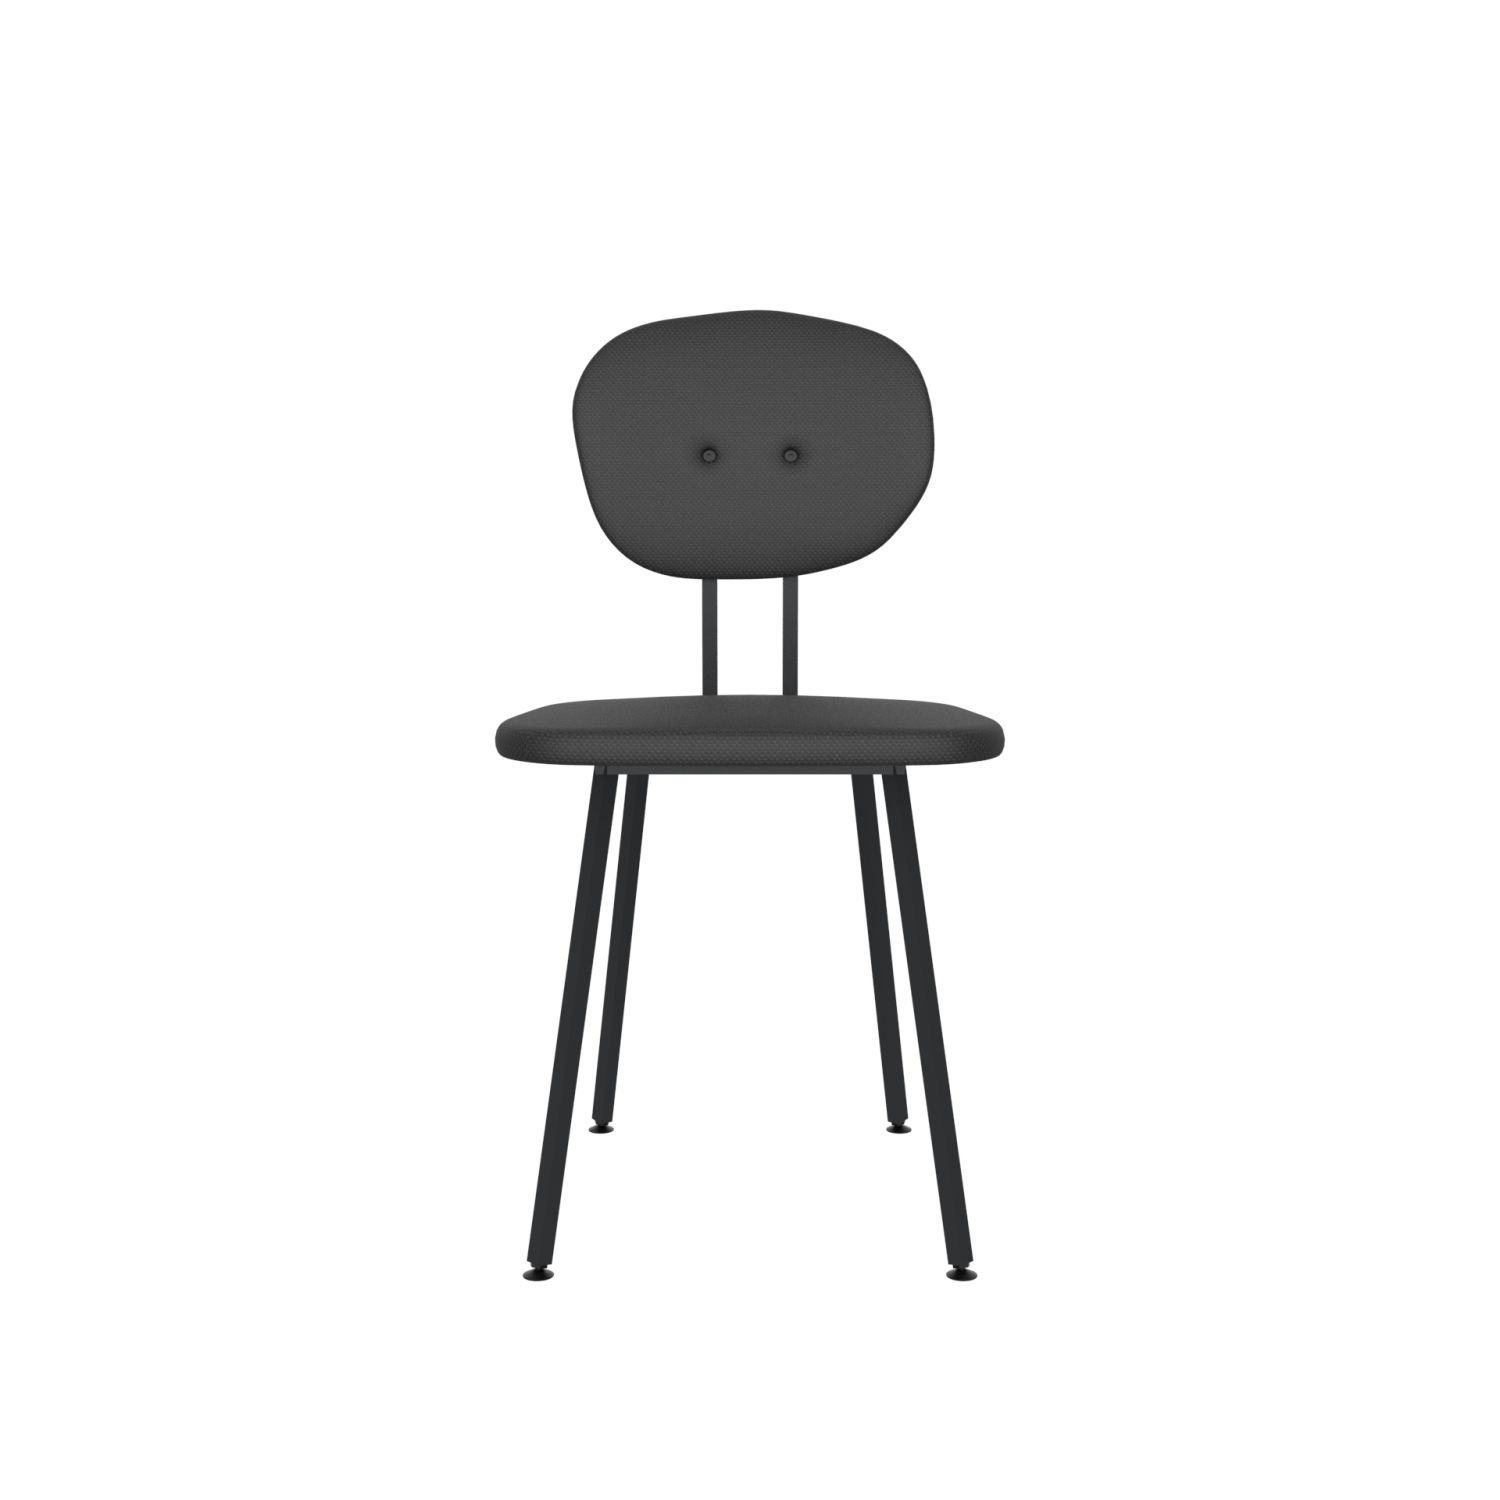 lensvelt maarten baas chair 101 not stackable without armrests backrest a havana black 090 black ral9005 hard leg ends